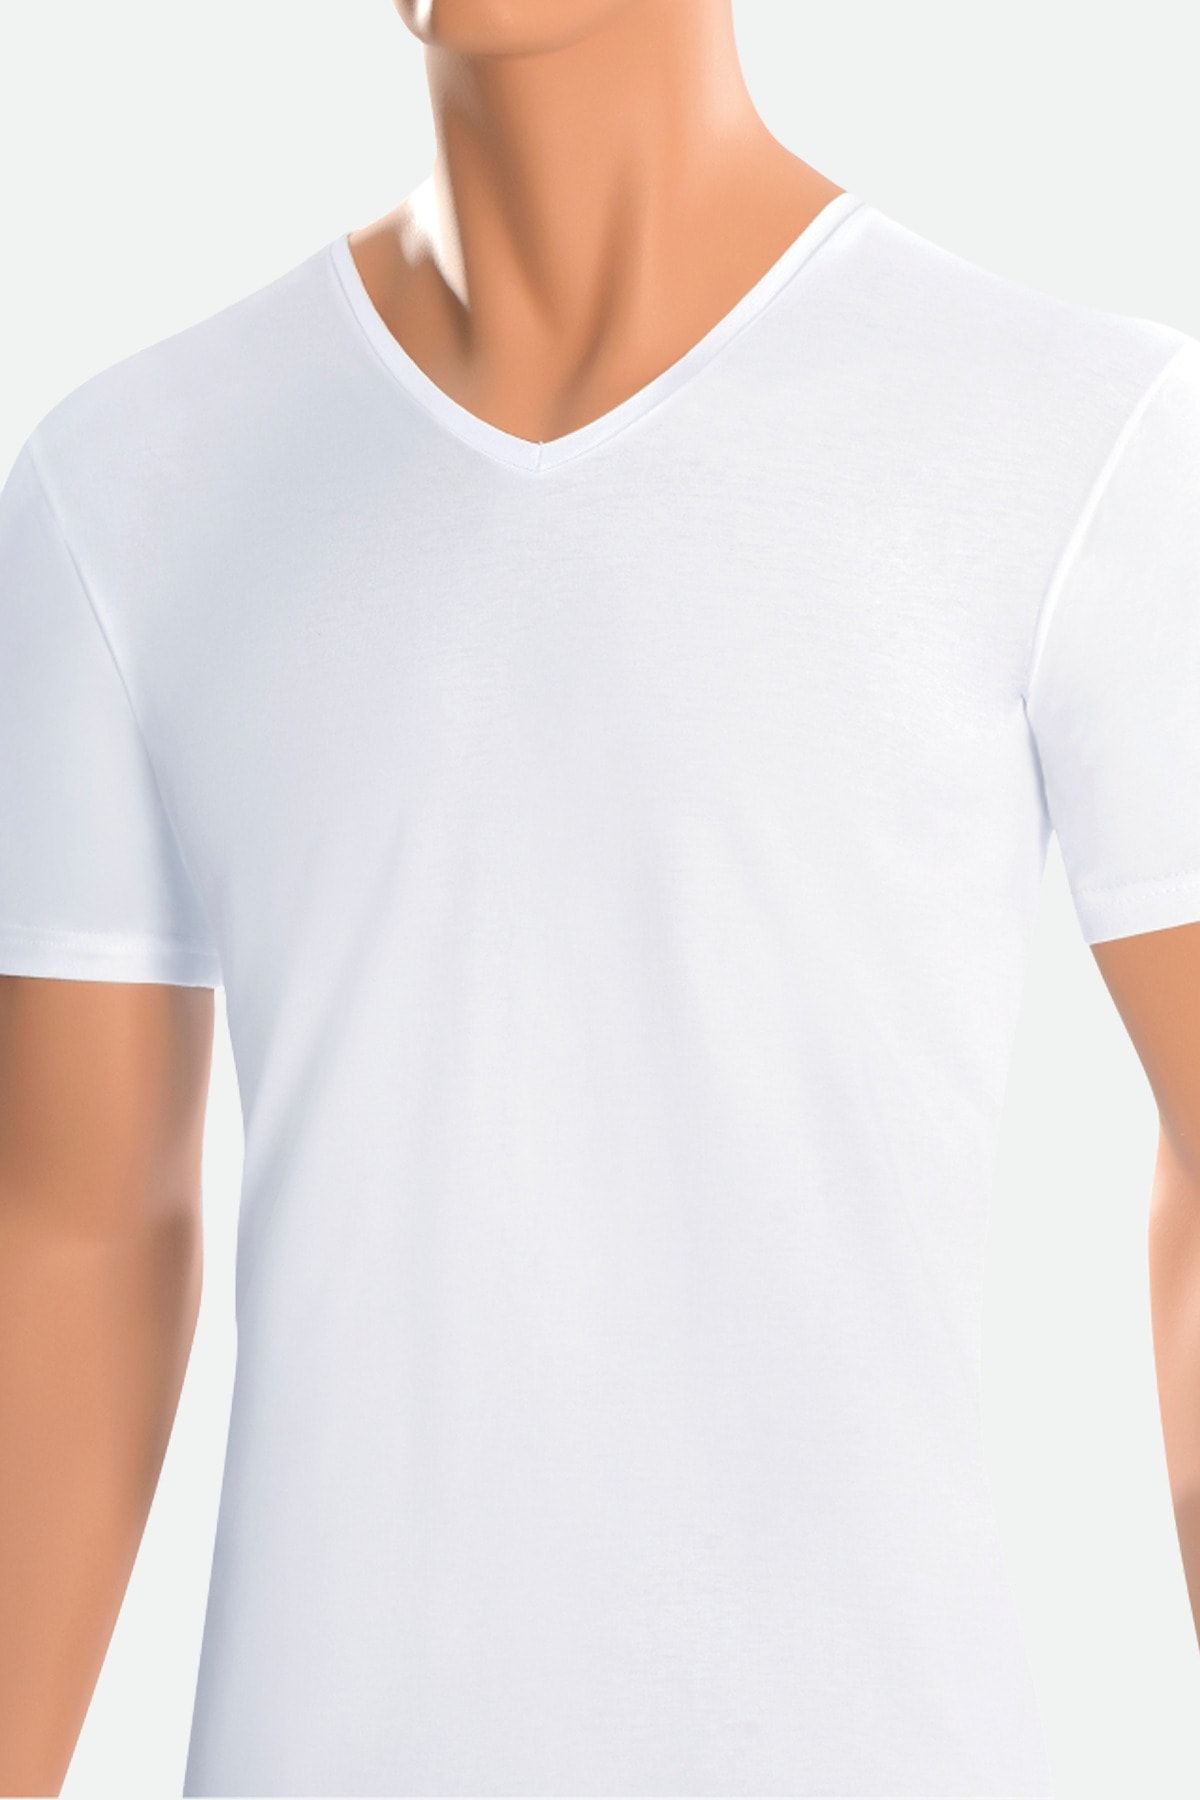 Öts 2'li Erkek Süprem V Yaka T-shirt Beyaz (%100 Pamuk)